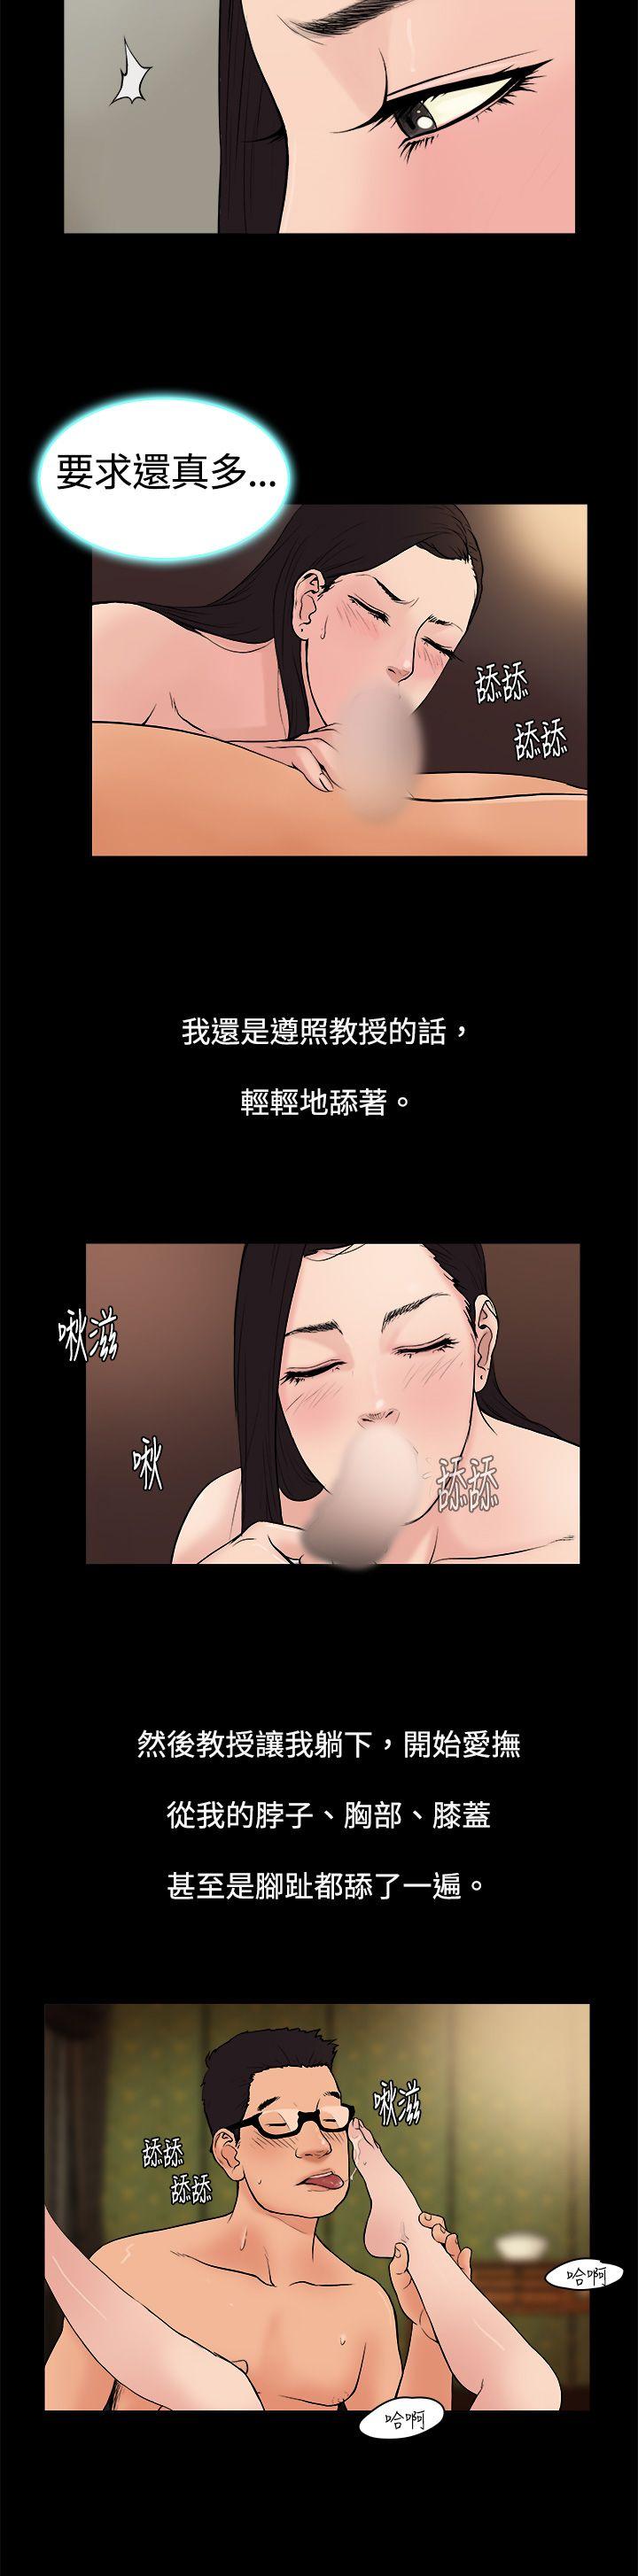 韩国污漫画 10億風騷老板娘 第5话 9